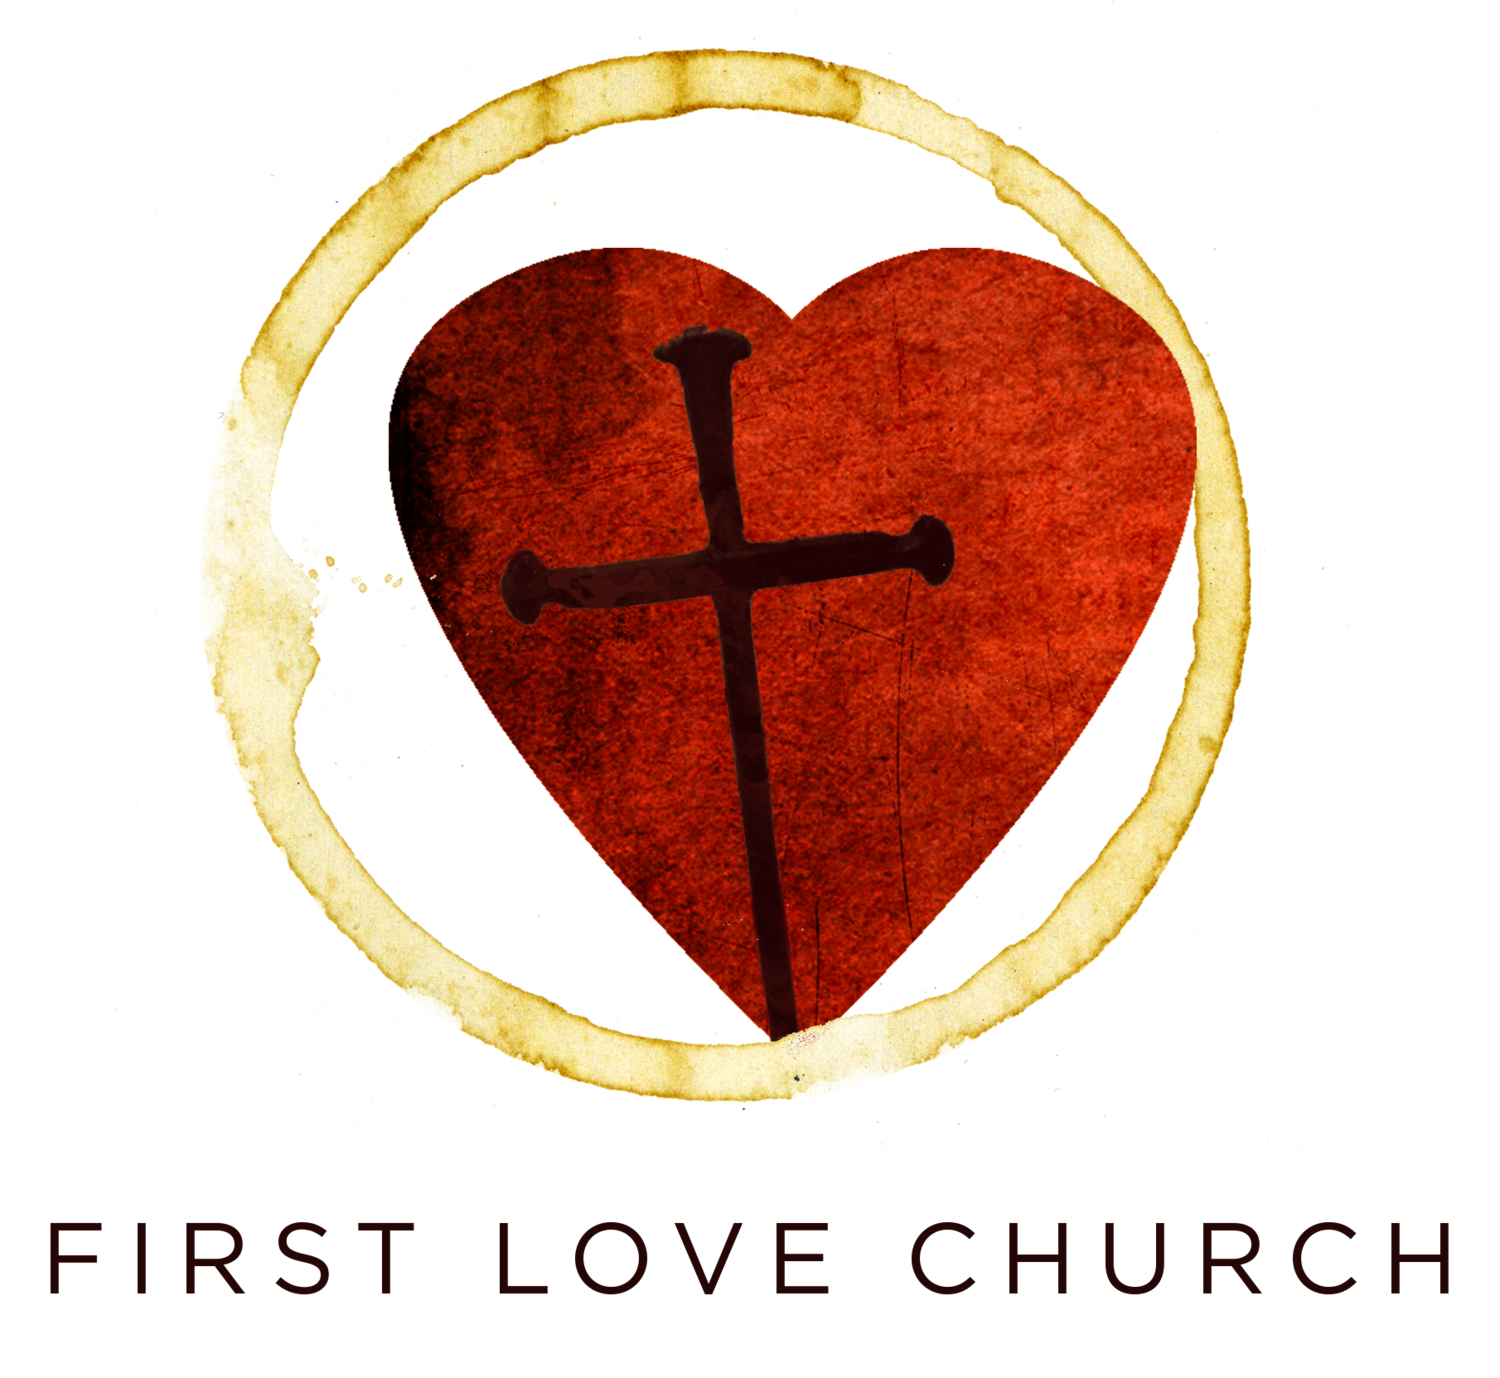 FIRST LOVE CHURCH